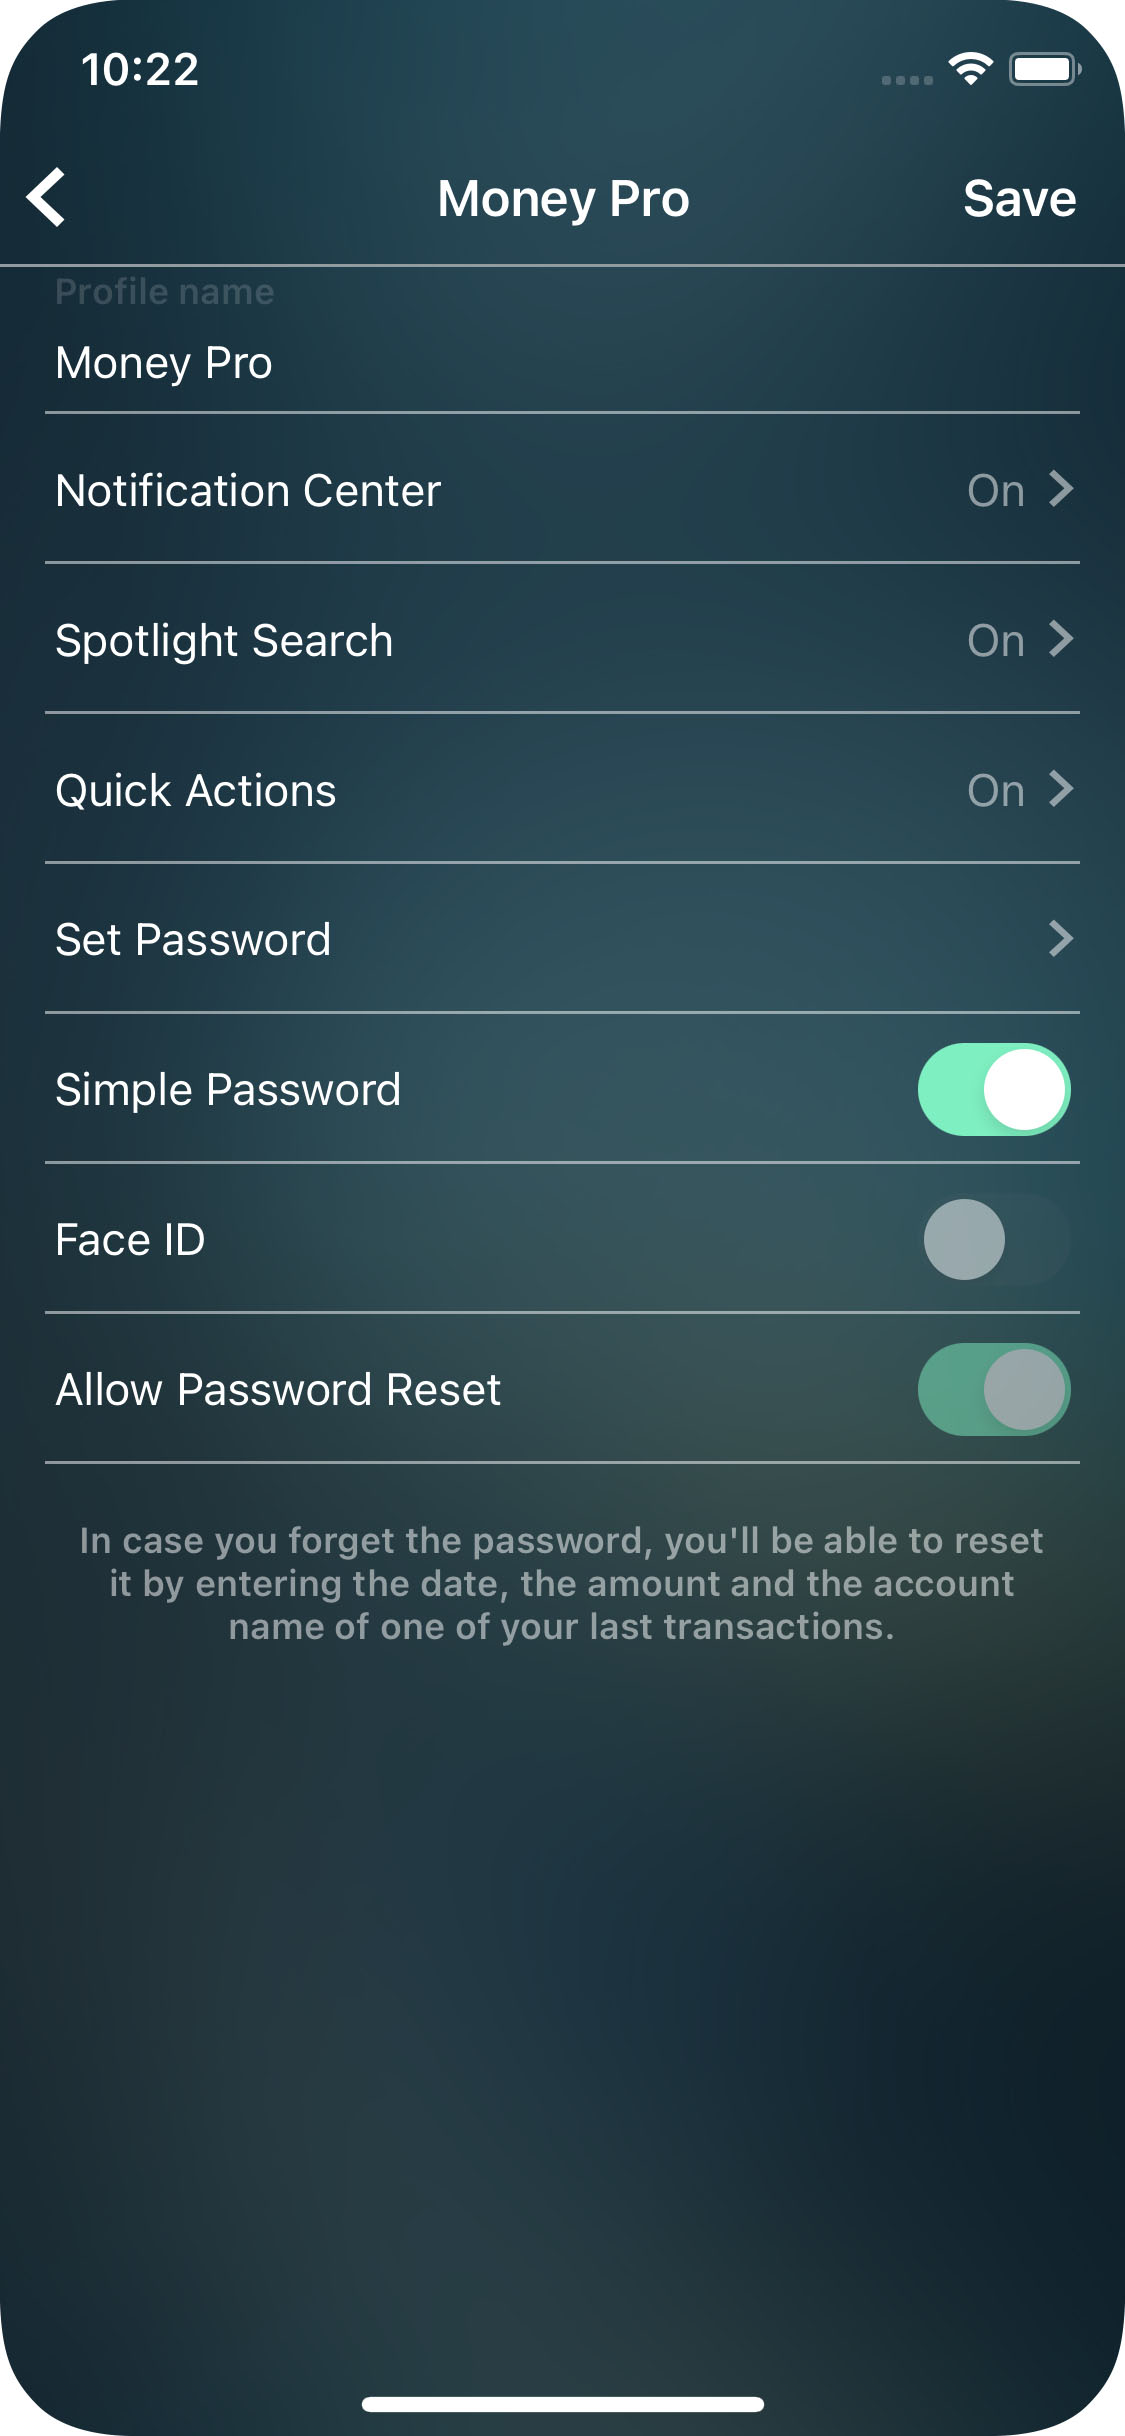 Money Pro - Password protection - iPhone